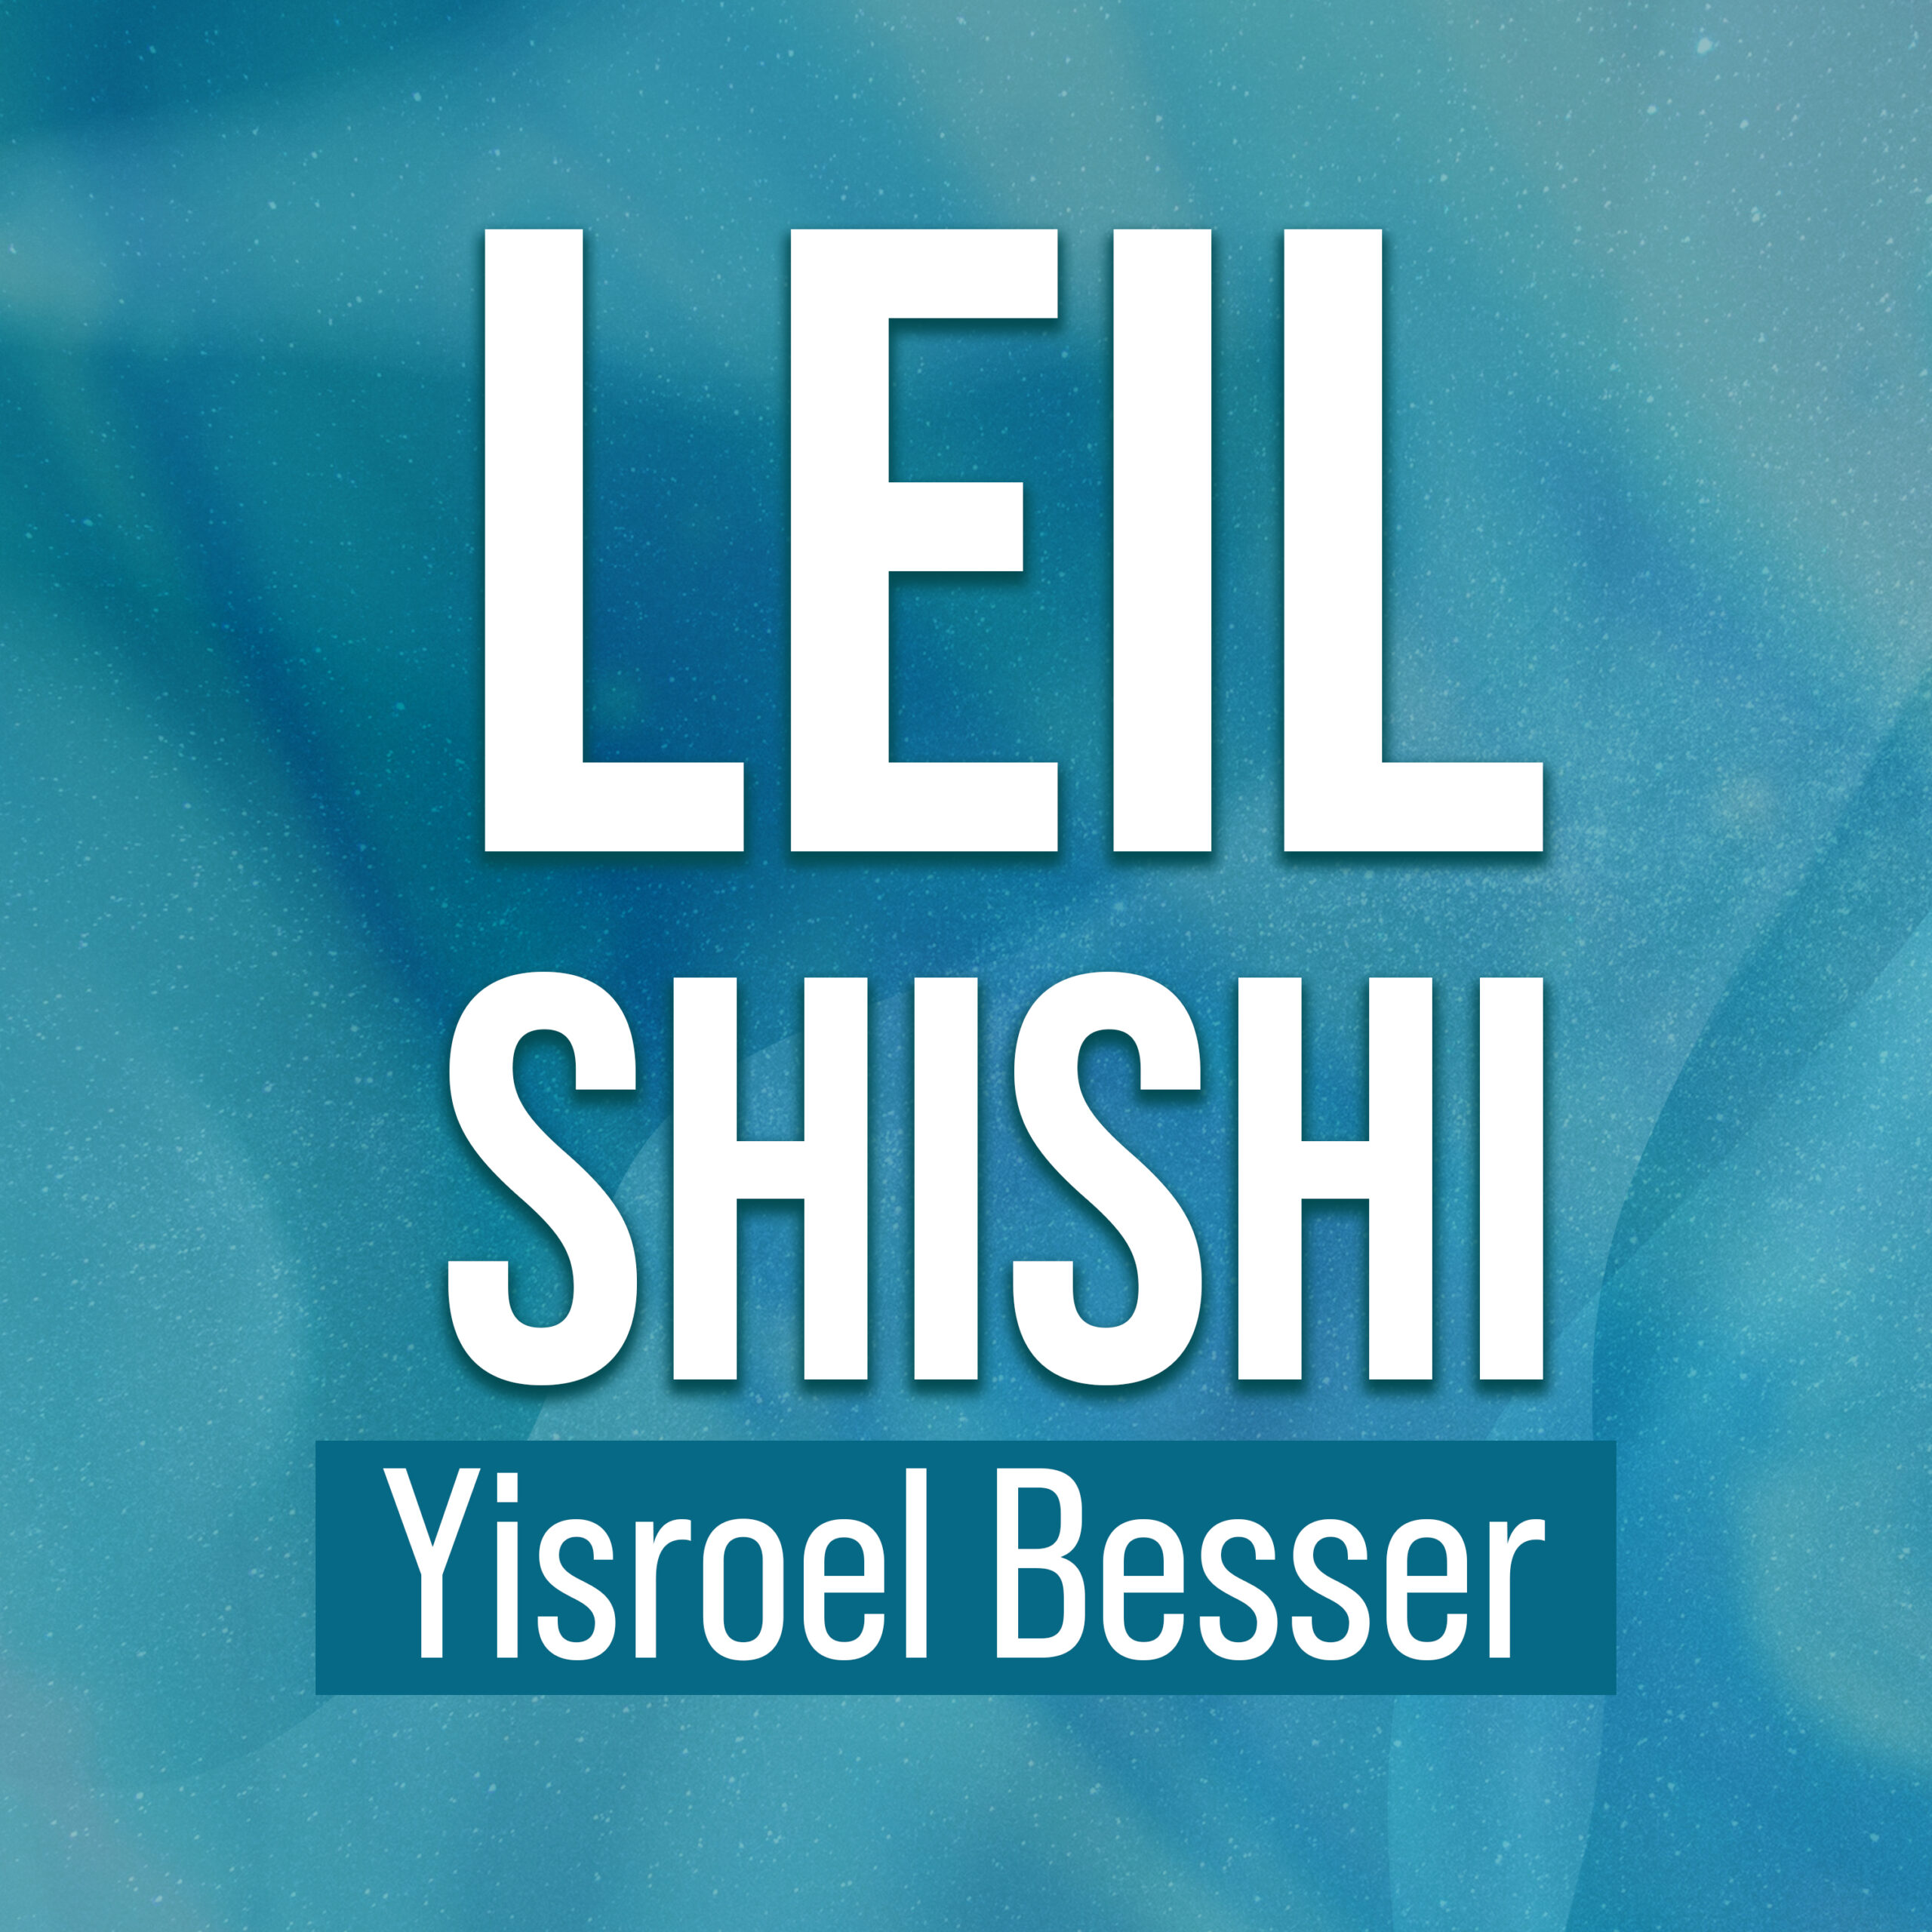 Yisroel Besser: Bearer of Good News